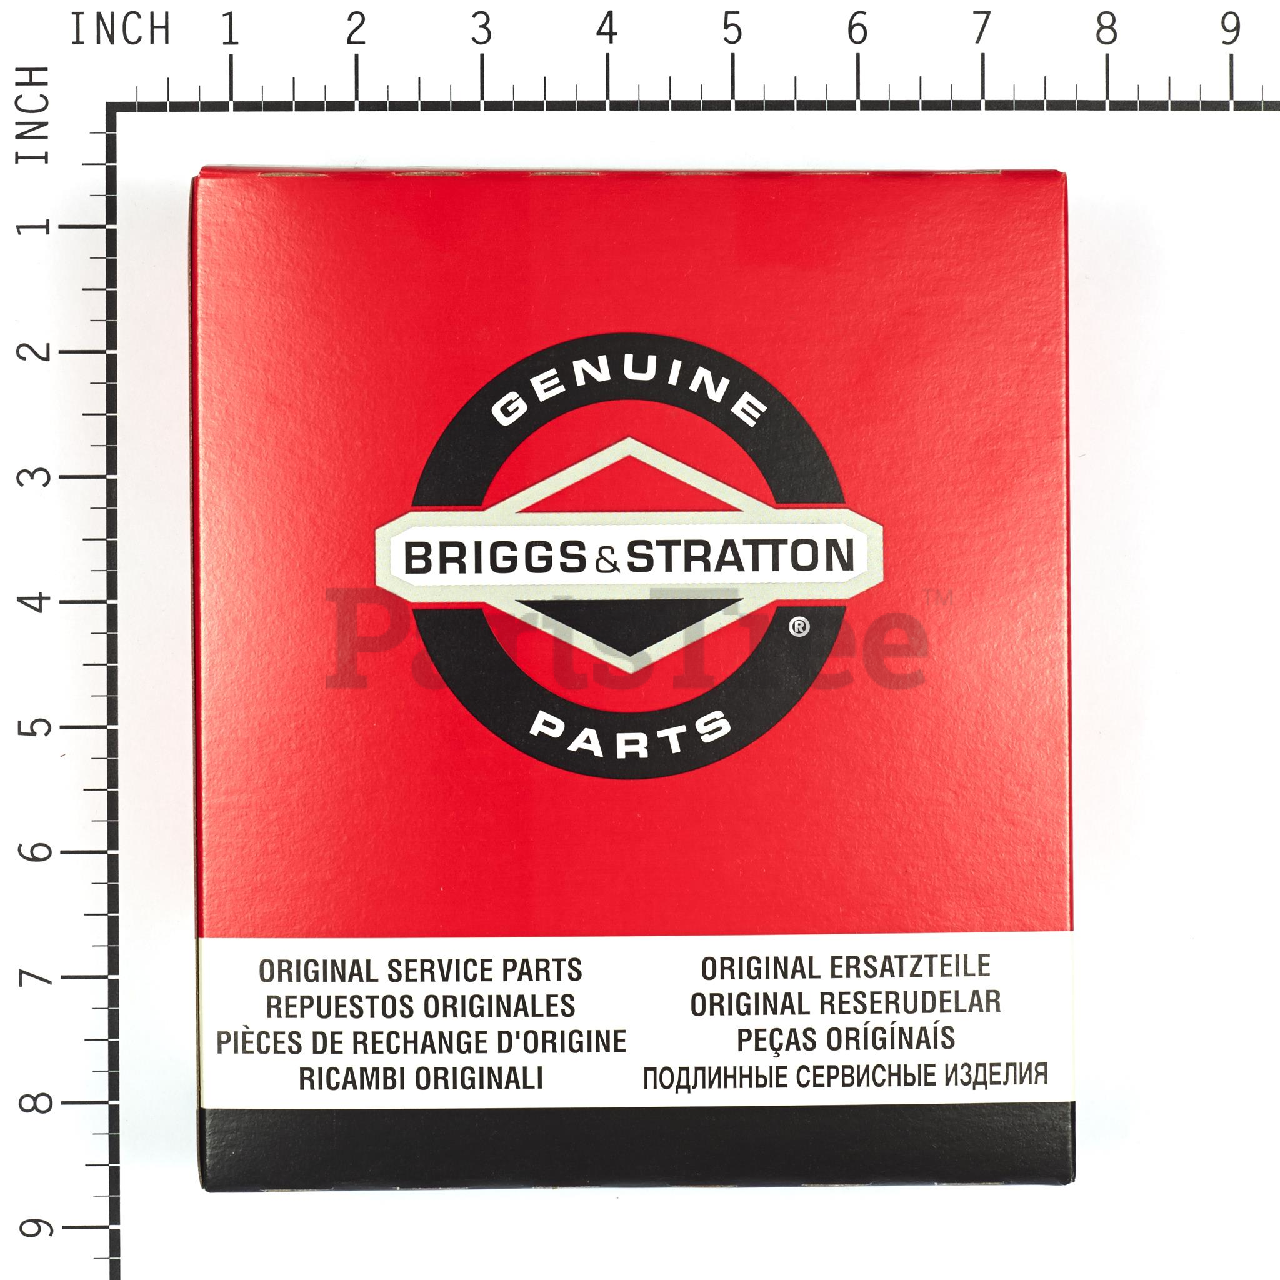 Briggs and Stratton 112212-0853-01 Parts Diagrams